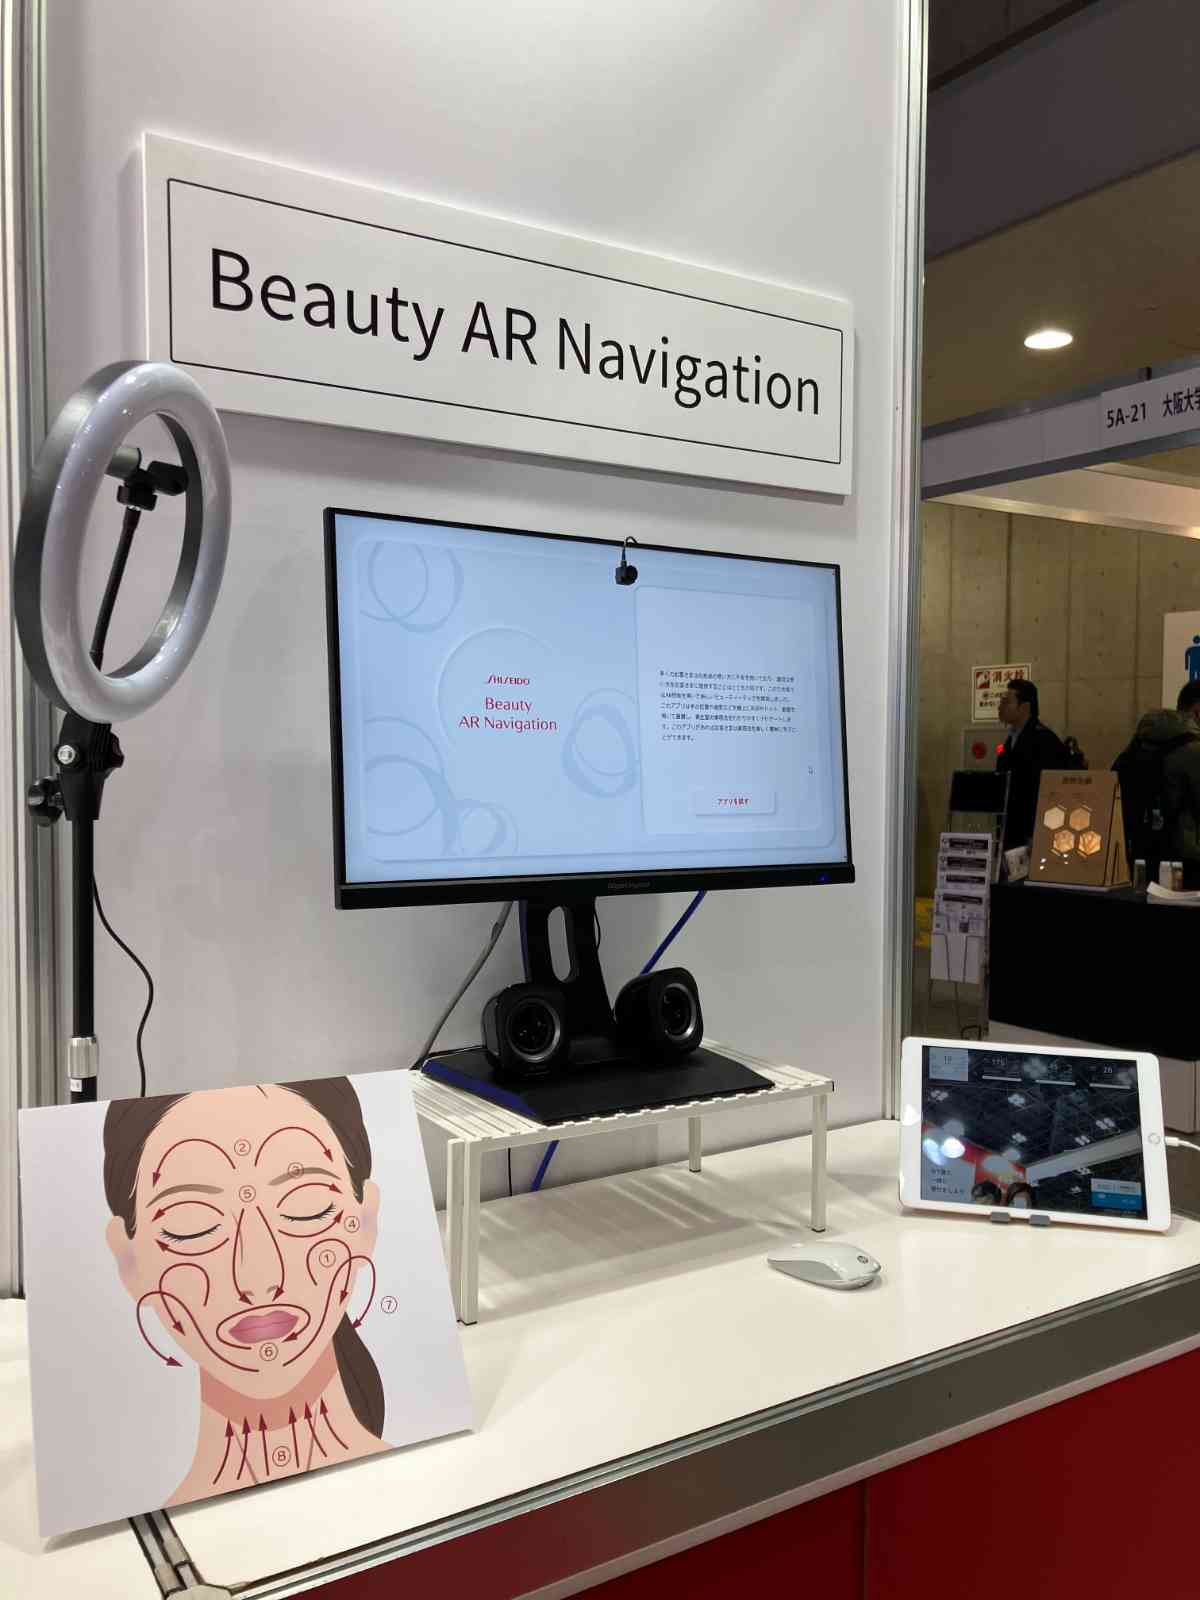 Beauty AR Navigation